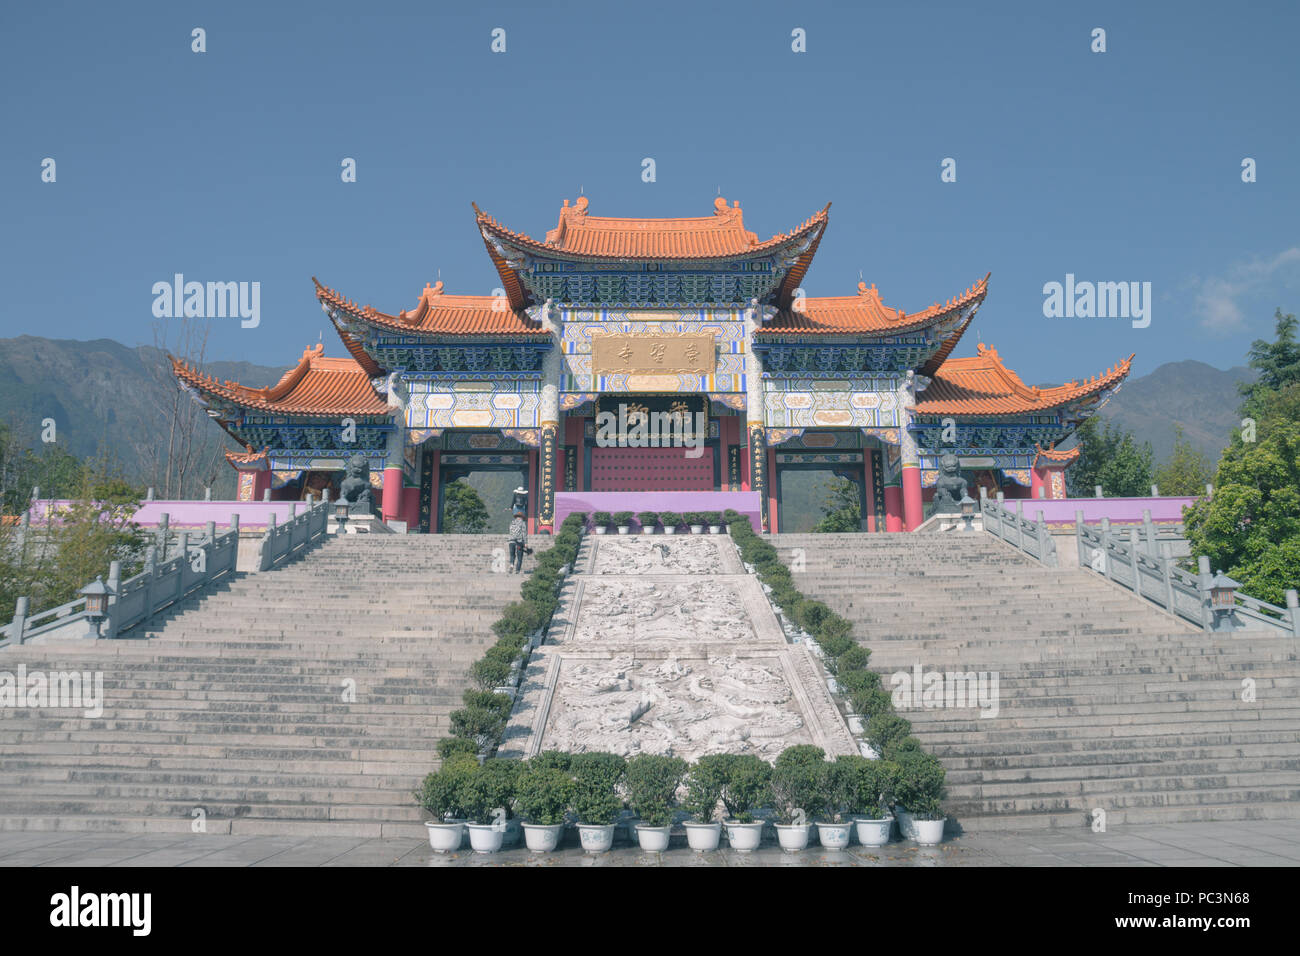 Dali Chongsheng Temple in Yunnan, China. The plaque read 'Fodu, Chongsheng Temple.' Stock Photo